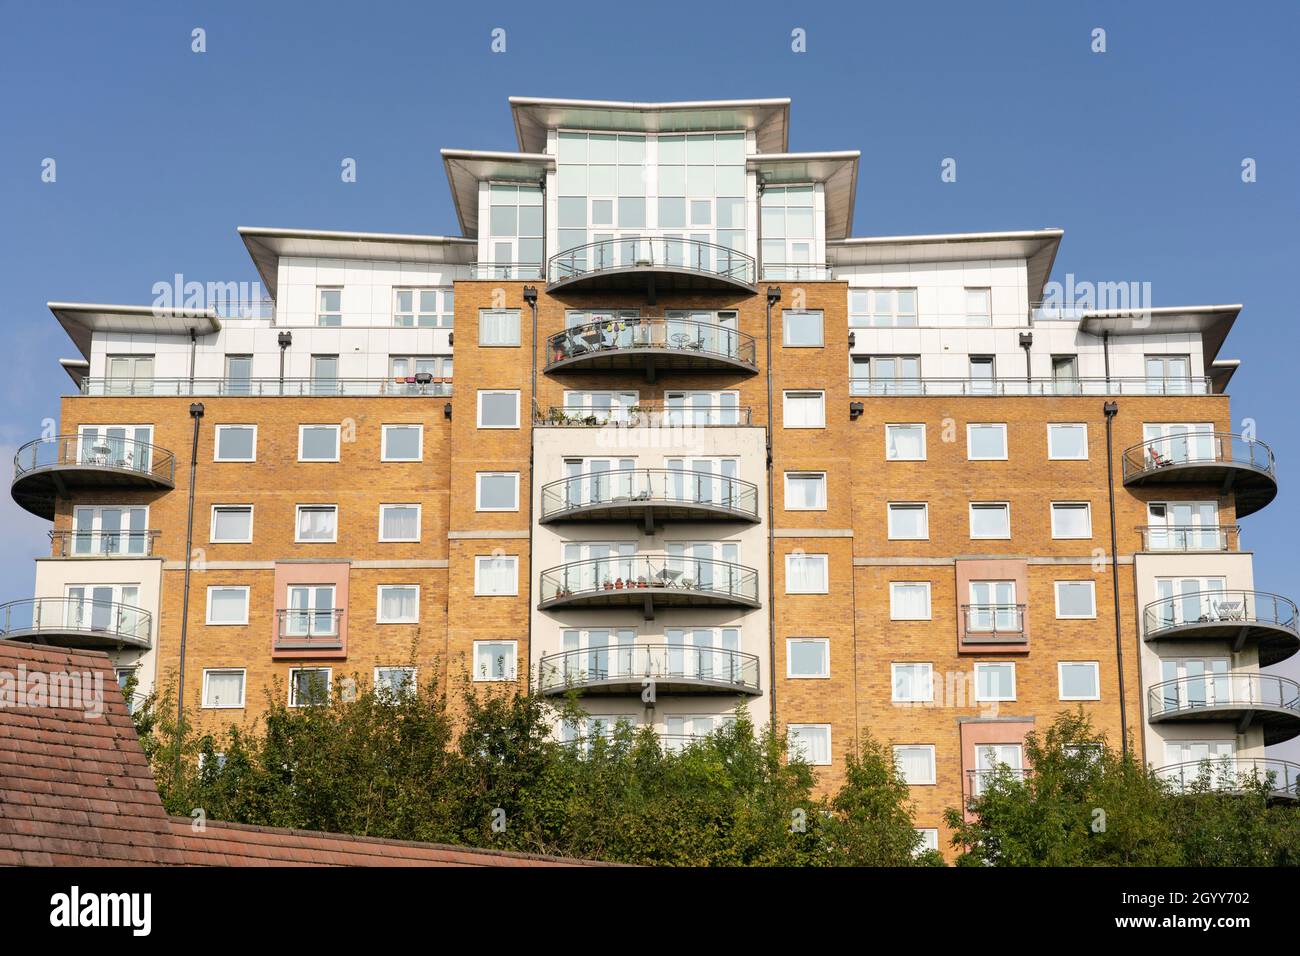 Blocchi di appartamenti in Winterthur Way che necessitano di rivestimenti in alluminio composito e terrazze in legno da sostituire per timori di rischio di incendio. Basingstoke, Regno Unito Foto Stock